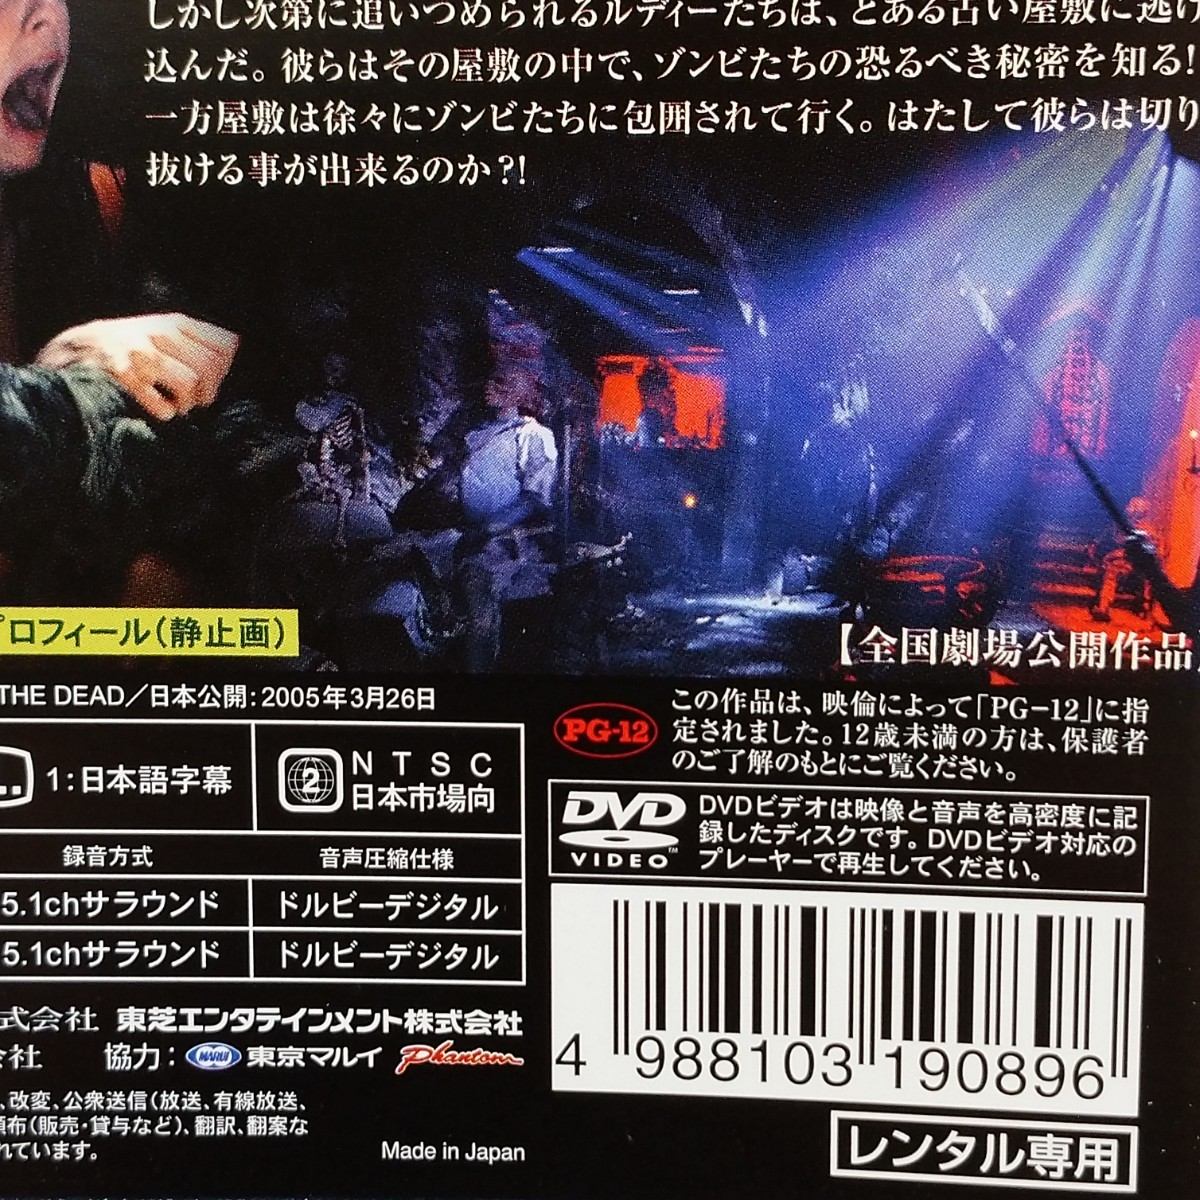 【DVD】洋画「ハウス・オブ・ザ・デッド　1,2巻」レンタル落ち　HOUSE OF THE DEAD　ホラー映画